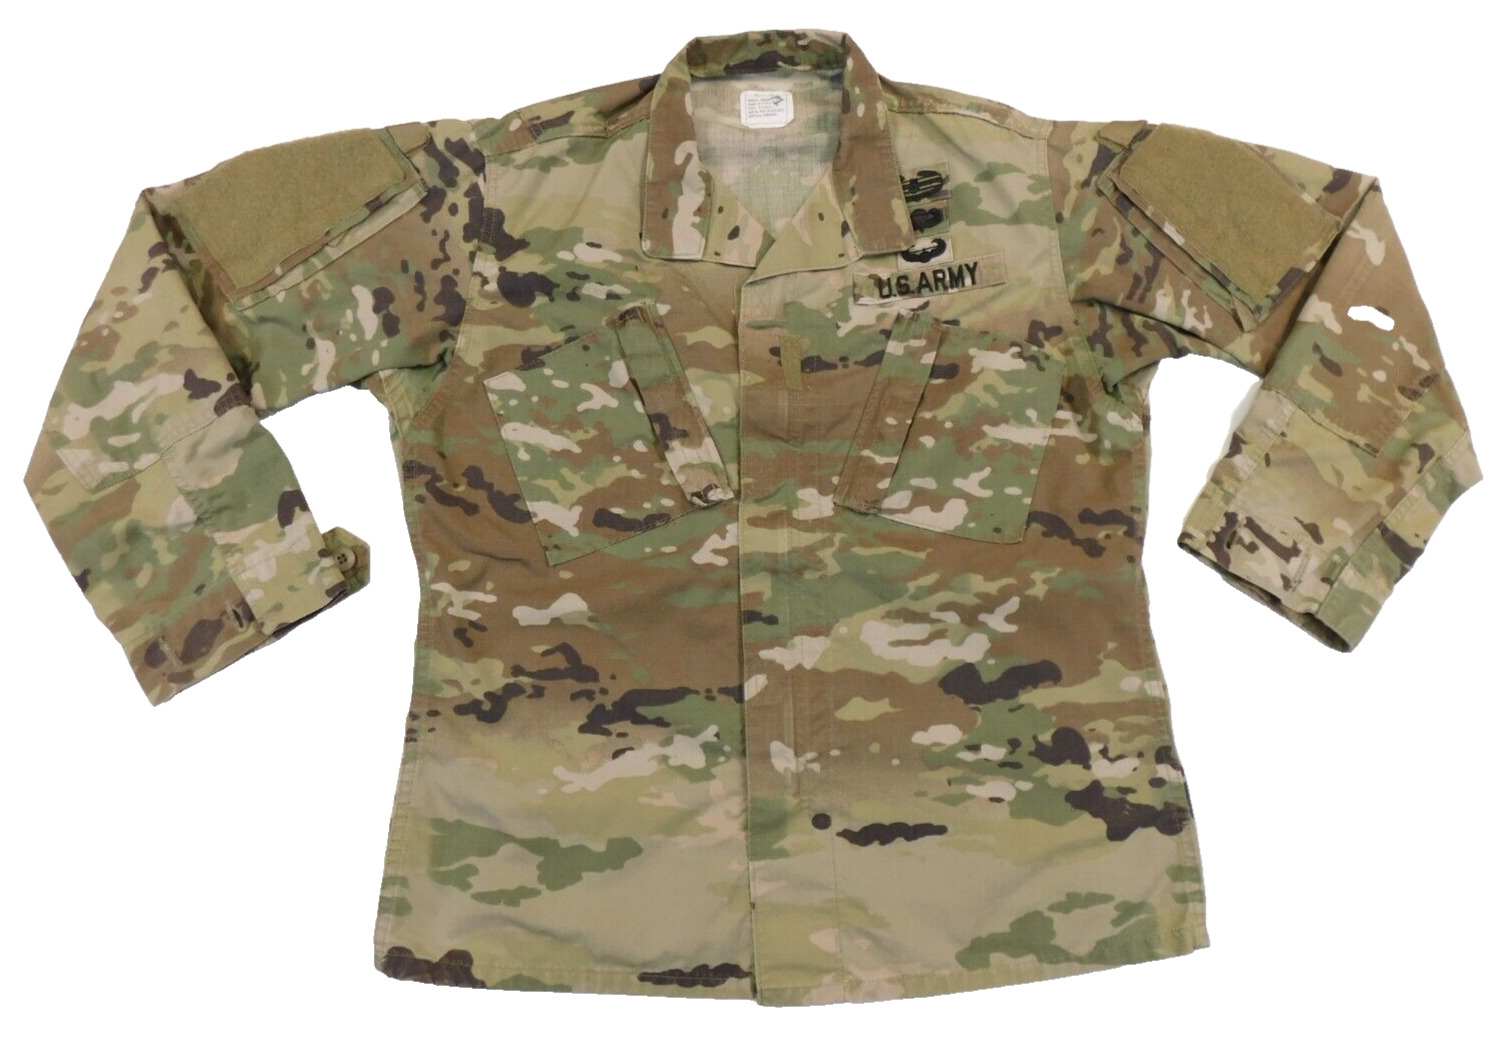 US Army Coat Airborne Assault Combat Action Medium Regular OCP Camo Uniform